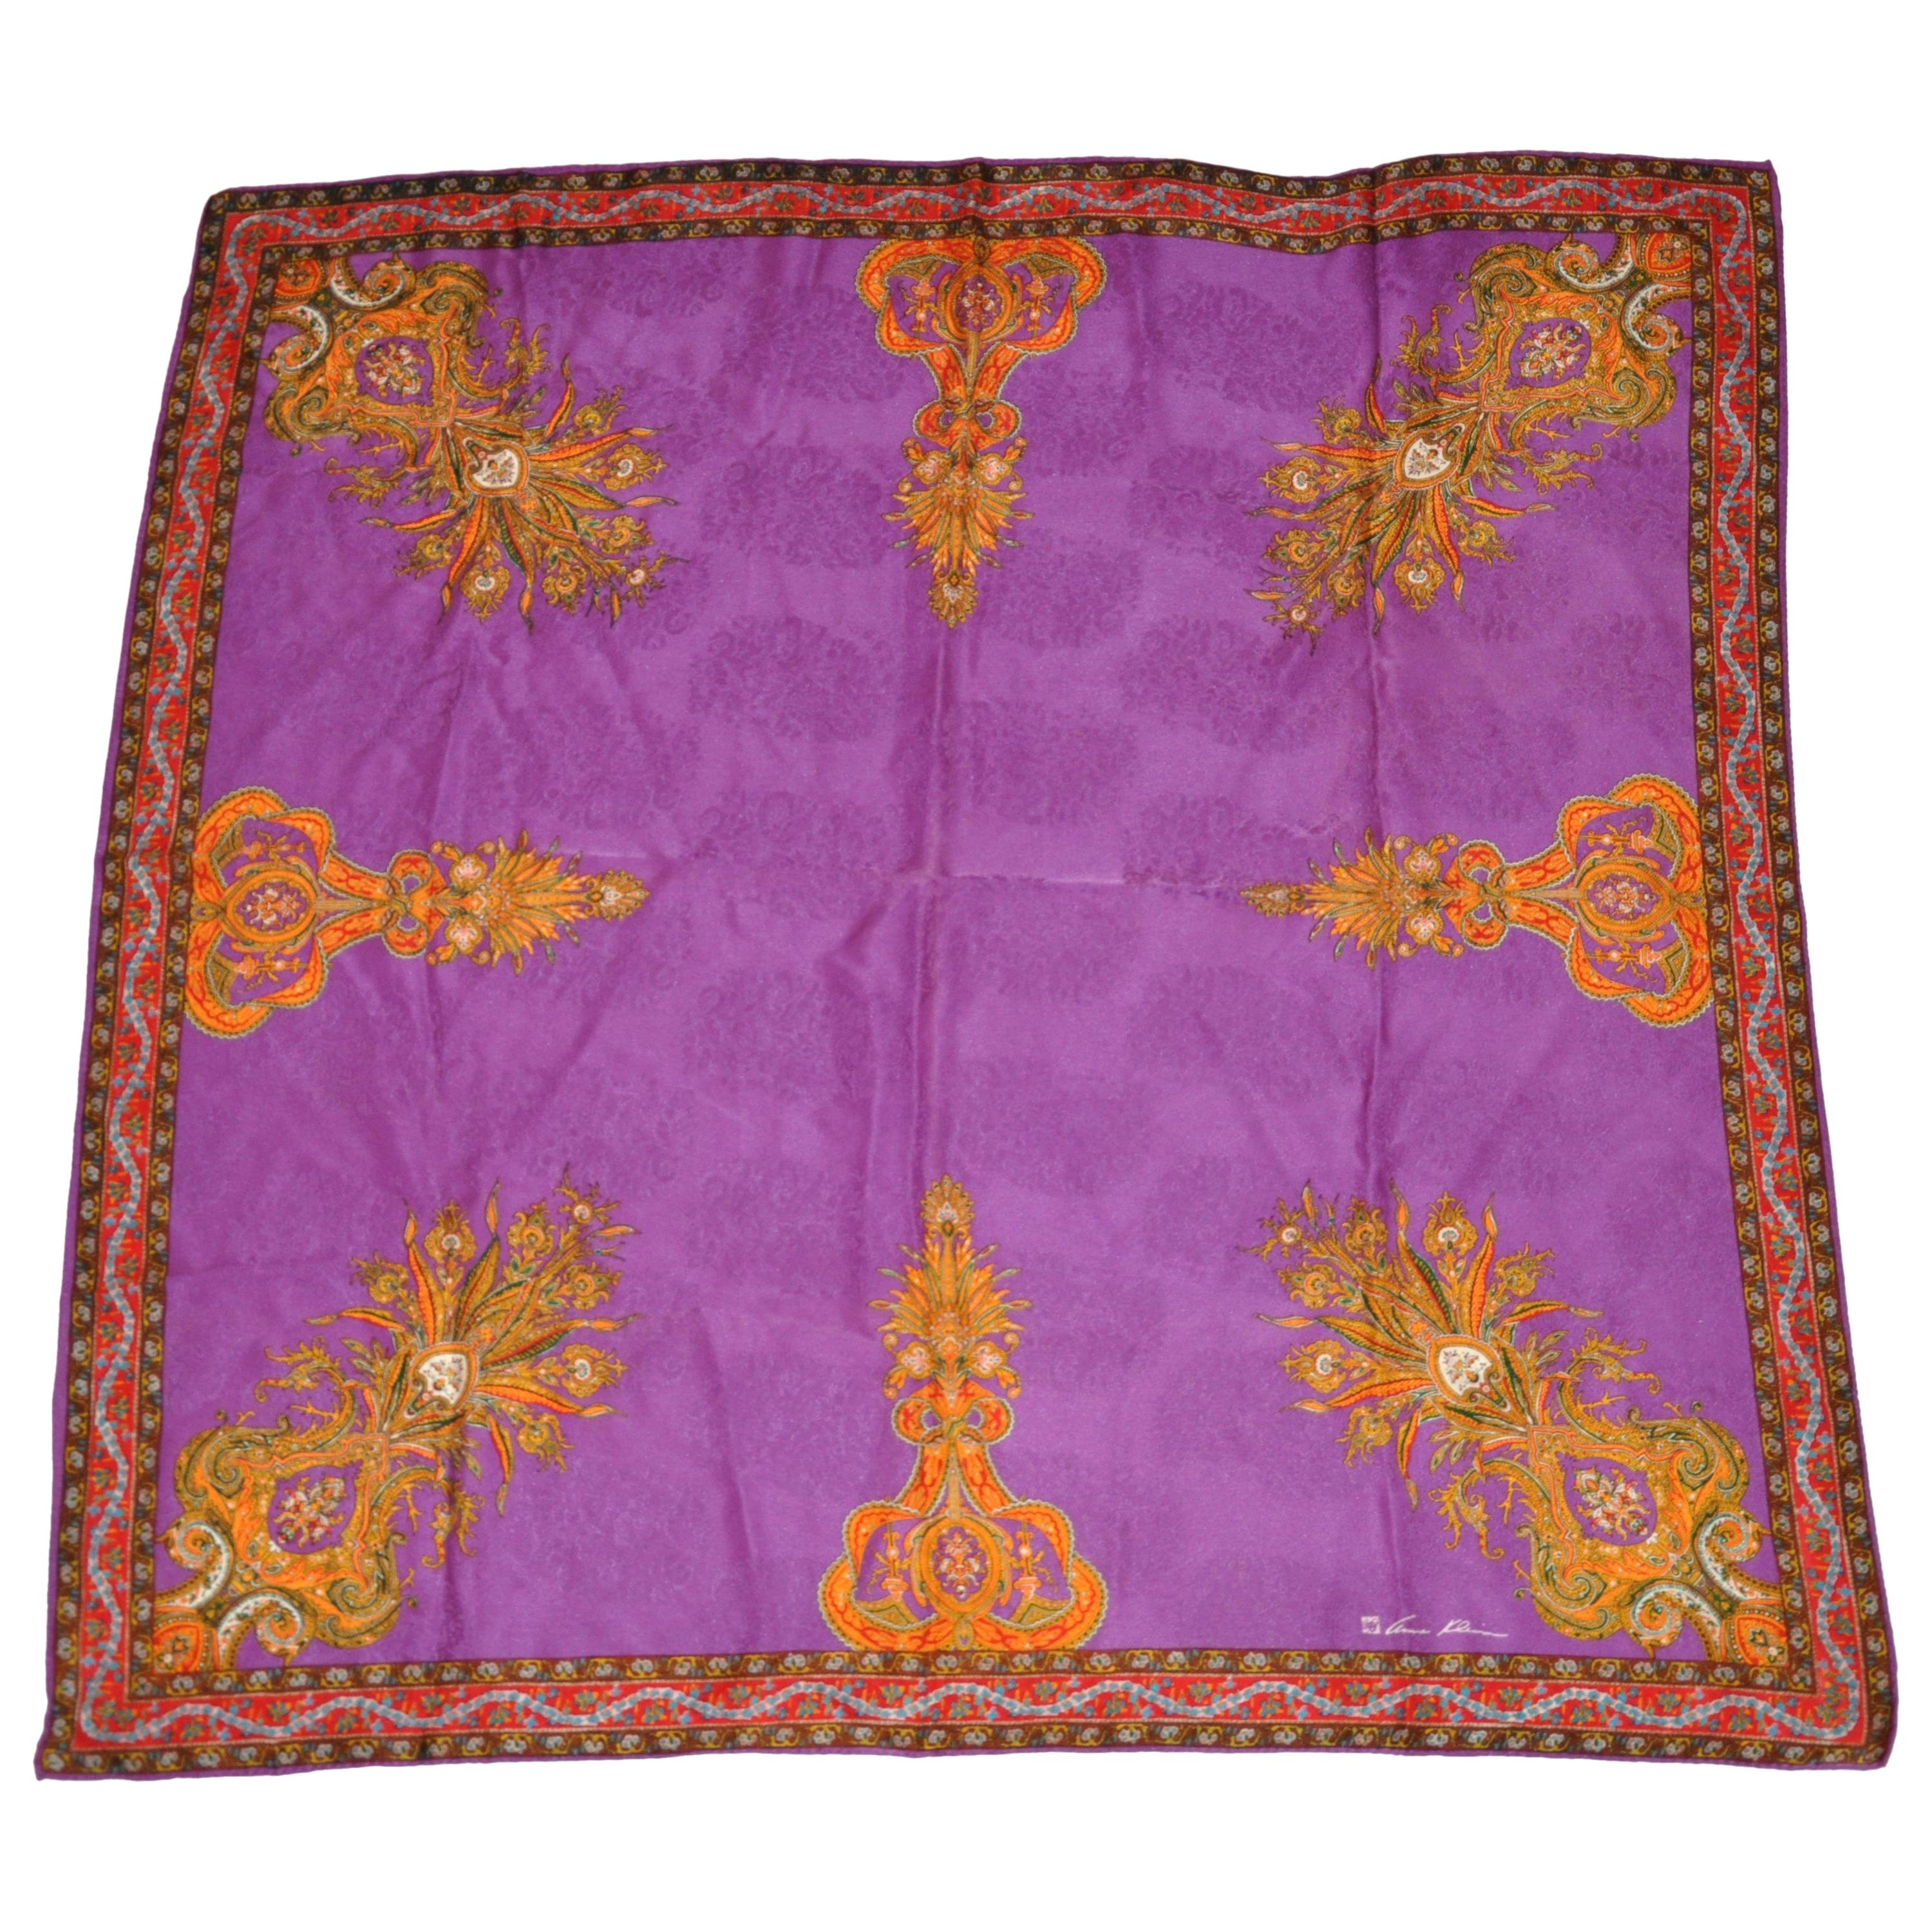 Anne Klein - Écharpe en soie riche et colorée, violette et brillante, avec détails en soie